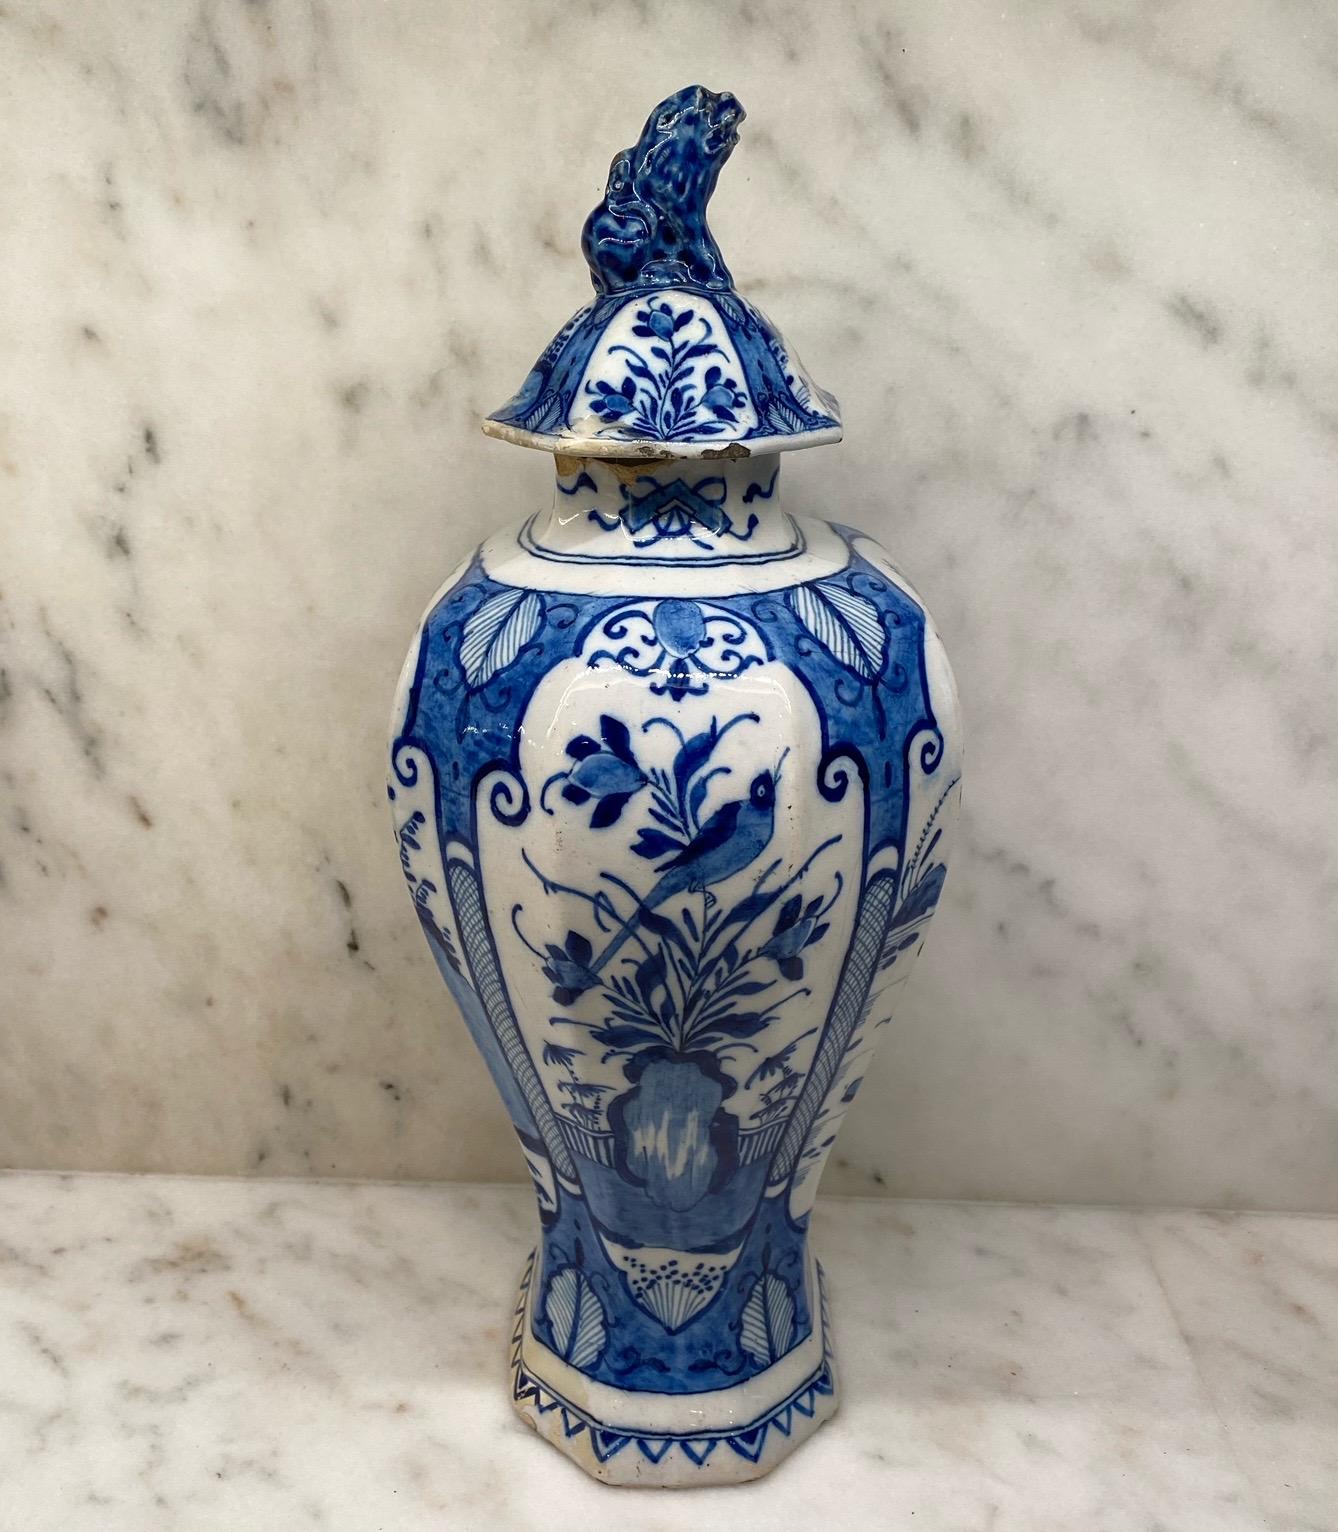 Niederländische Vase aus blau-weißem Delft mit Deckel, der auf allen Seiten Vogelszenen mit Blumenmotiv zeigt. Toll für Ornithologen - wirklich schön! Gekauft in Südfrankreich. Ohne Aufsatz 11,5 h
#5781.